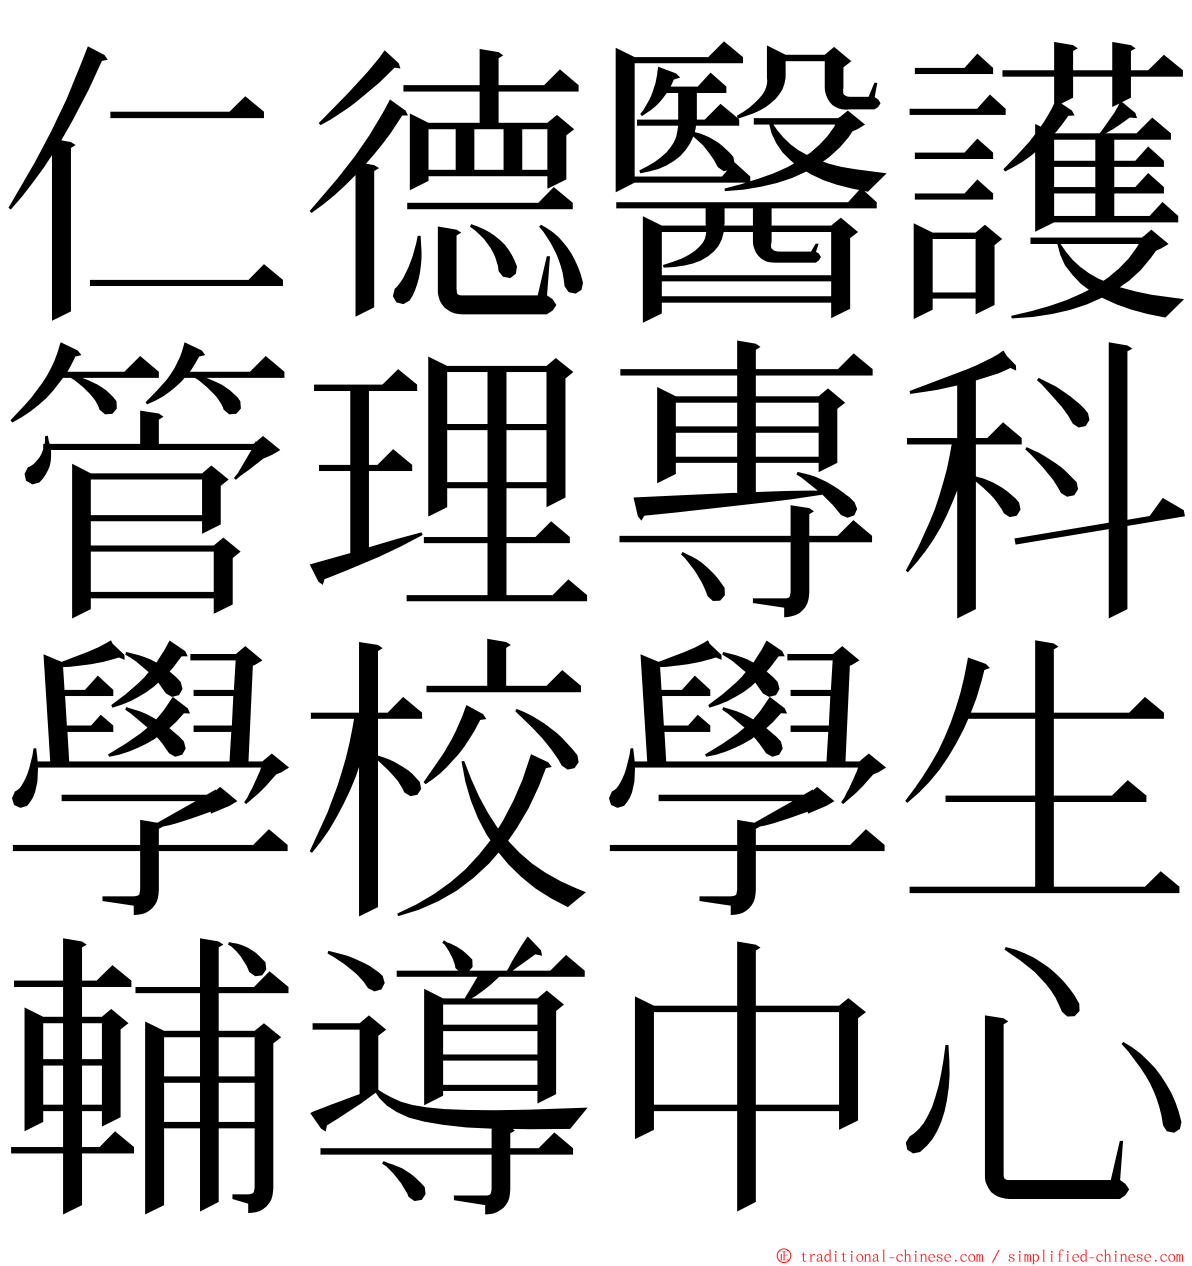 仁德醫護管理專科學校學生輔導中心 ming font